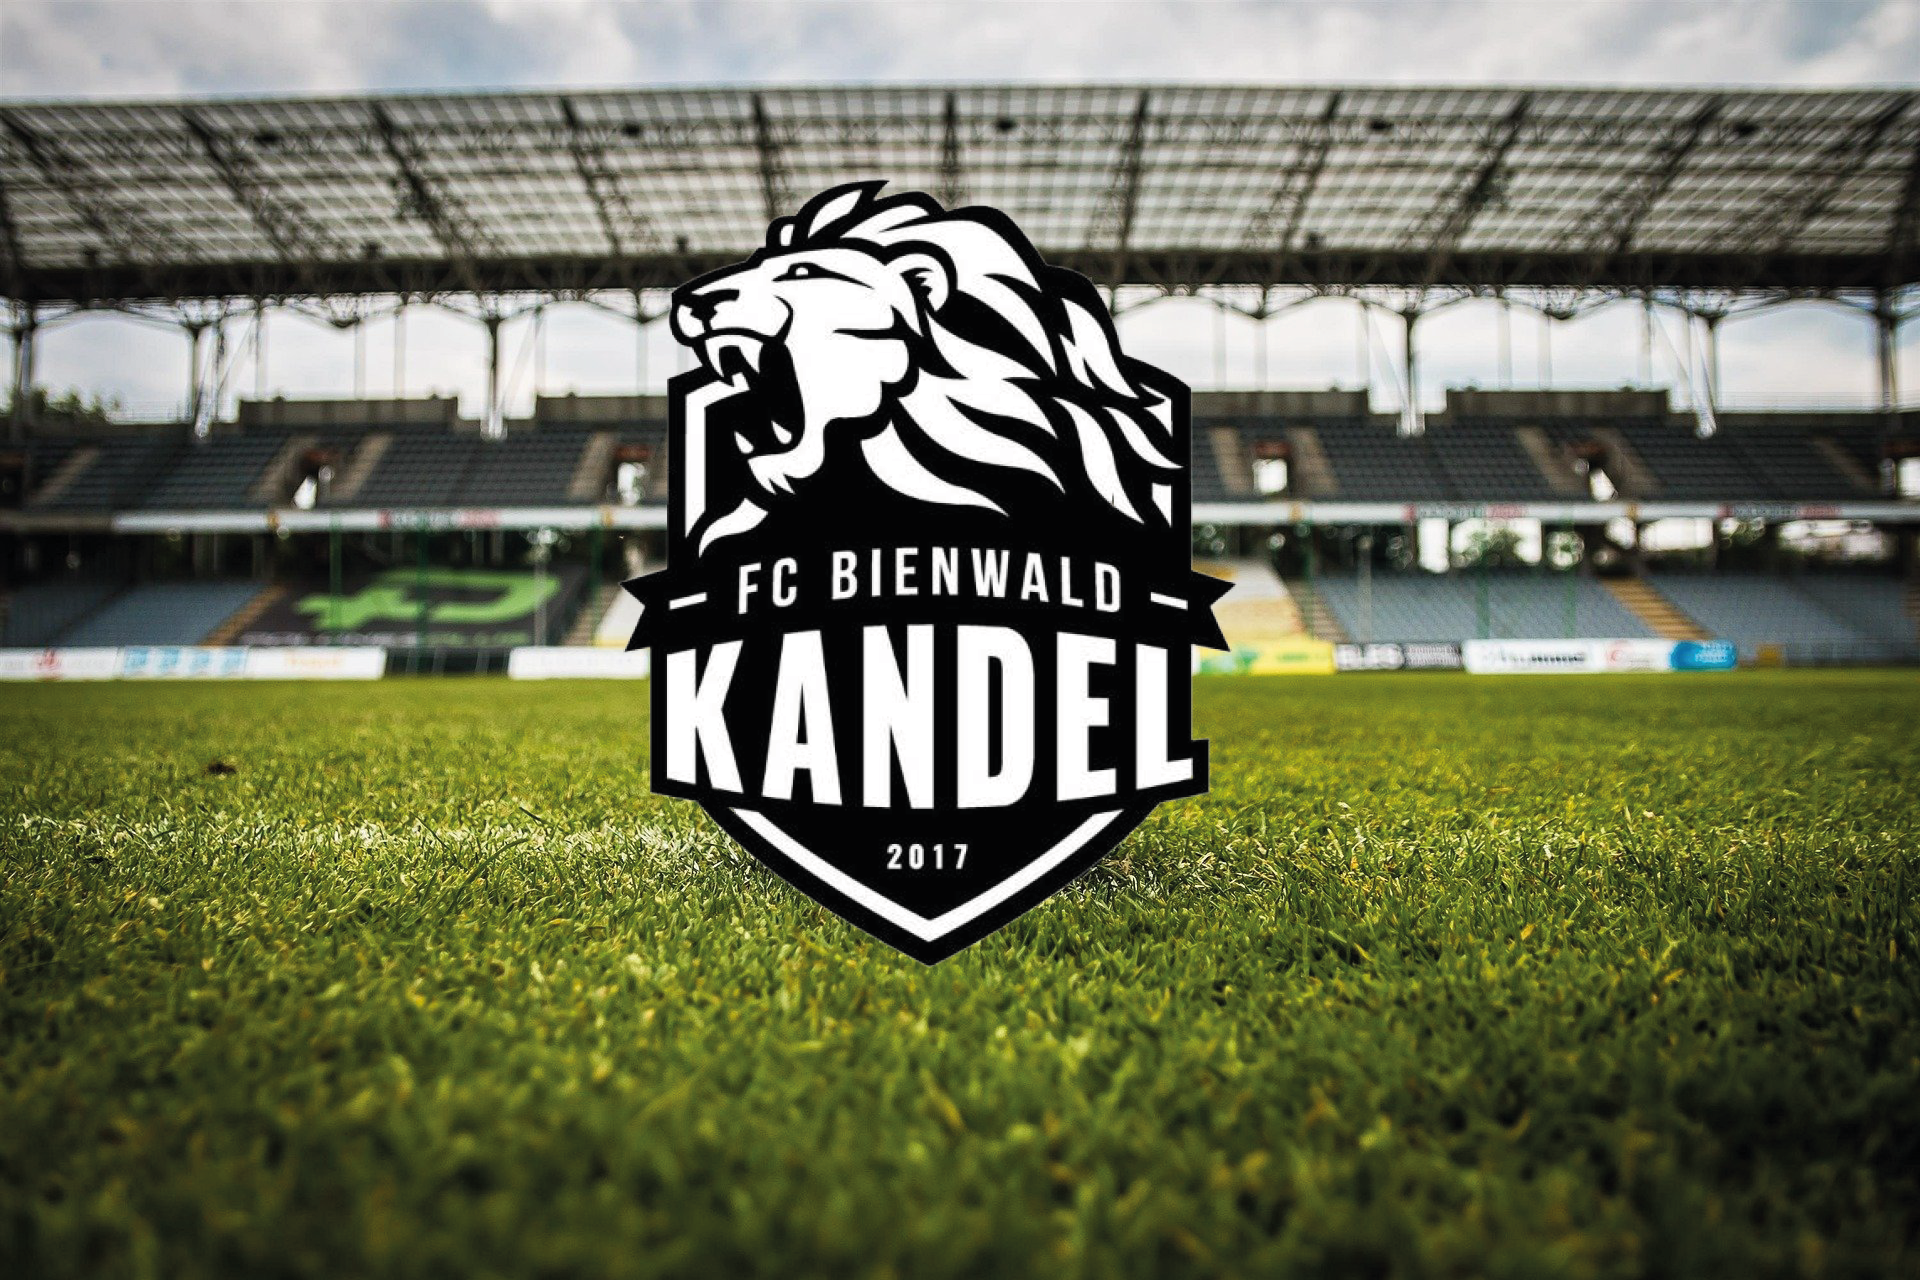 FC BIENWALD KANDEL - JUGEND Title Image